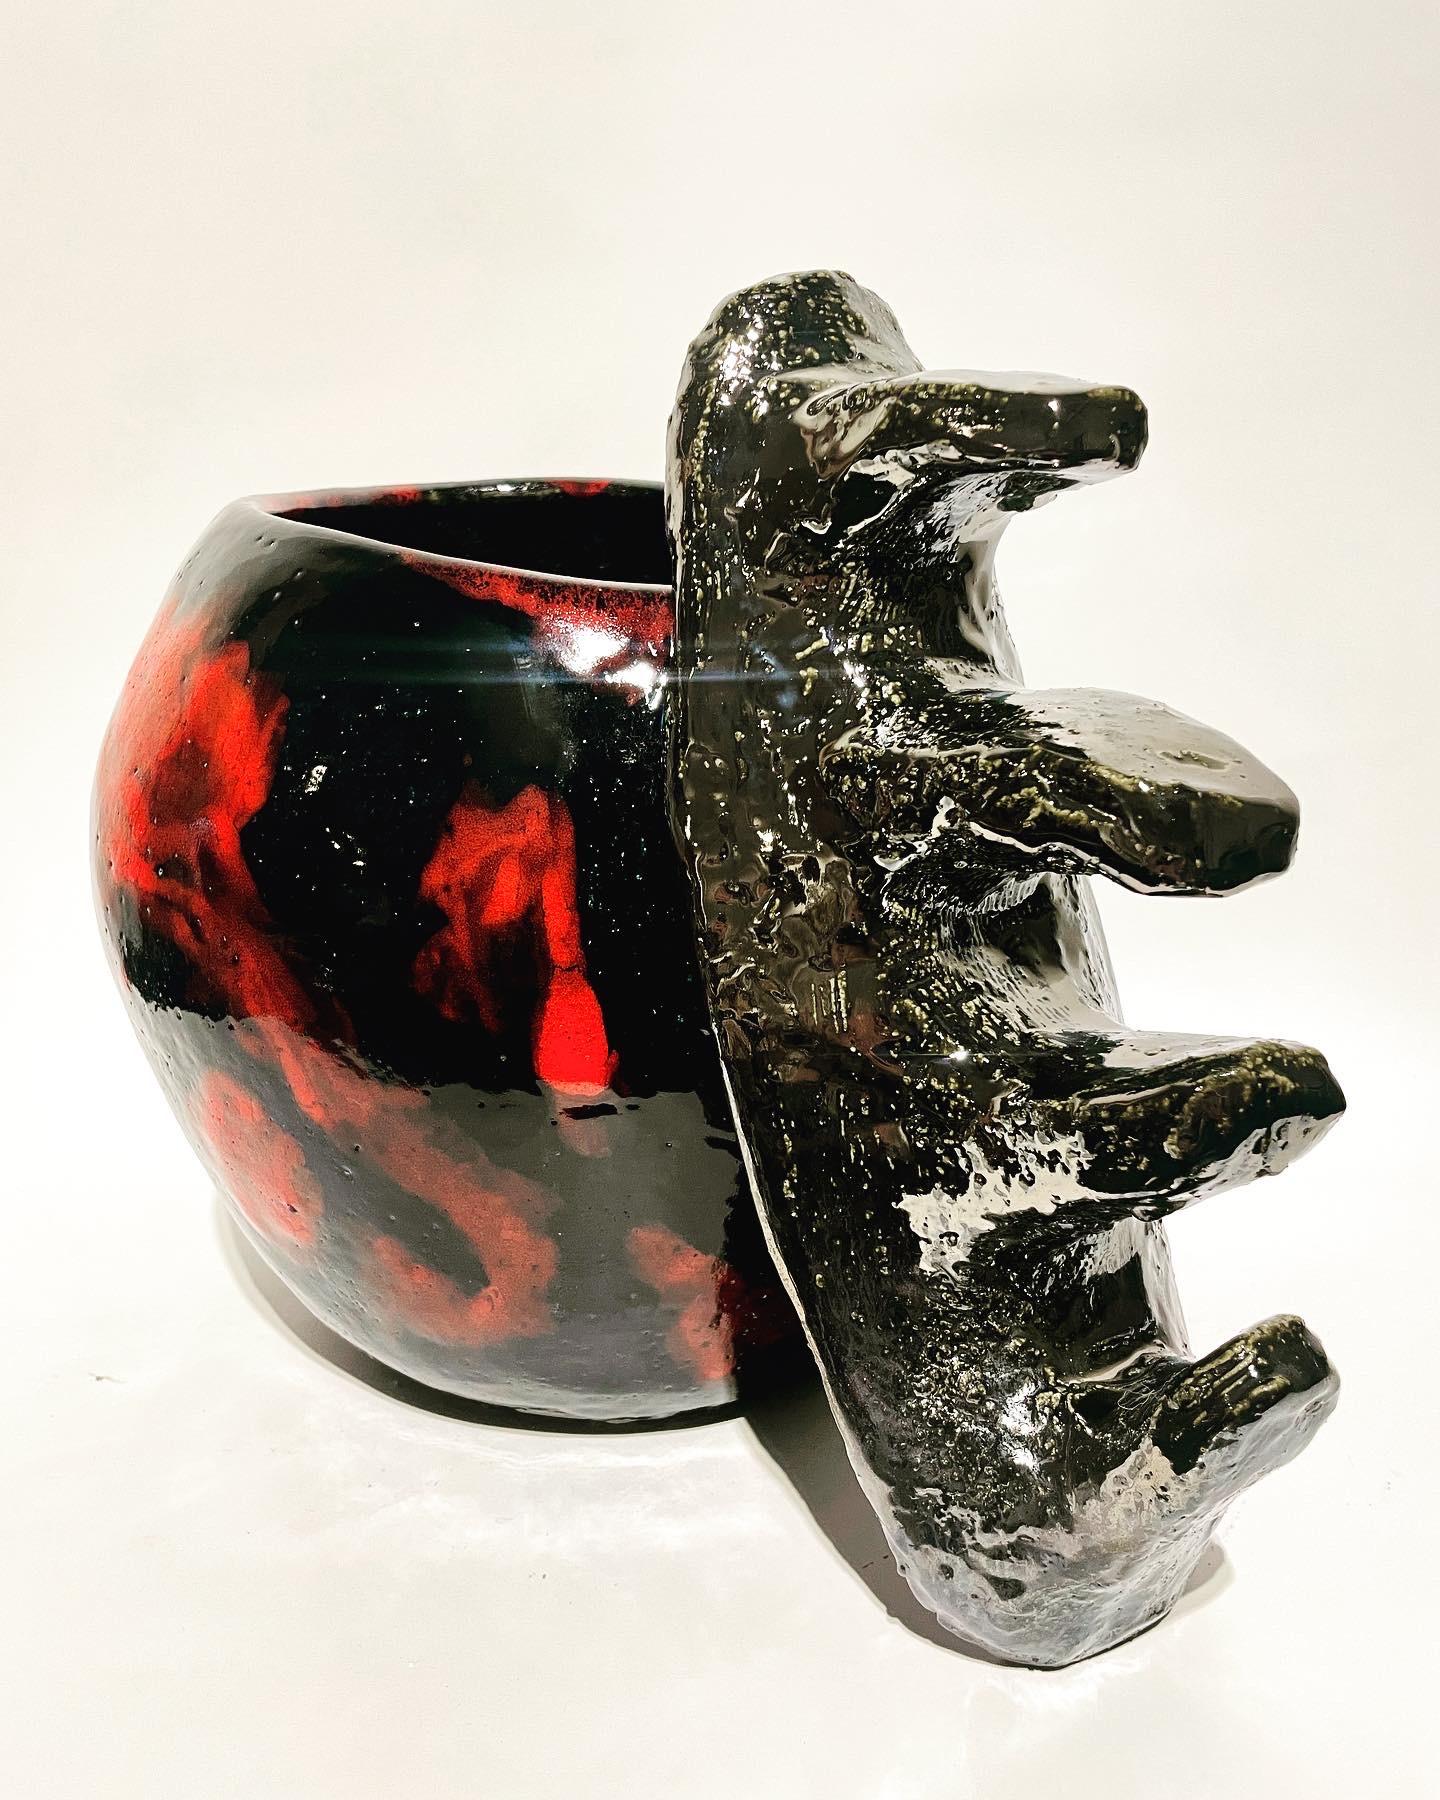 Die Detached Knuckler Blumenvase, in diffusem China Rot / Raven und Broken Silver, für Ihre Lieblingsblume/Pflanze oder als Vase/Objekt d'Art oder Skulptur. Nachhaltig hergestellt aus 100% recyceltem Steingut und 100% bleifreier Glasur, vom Künstler